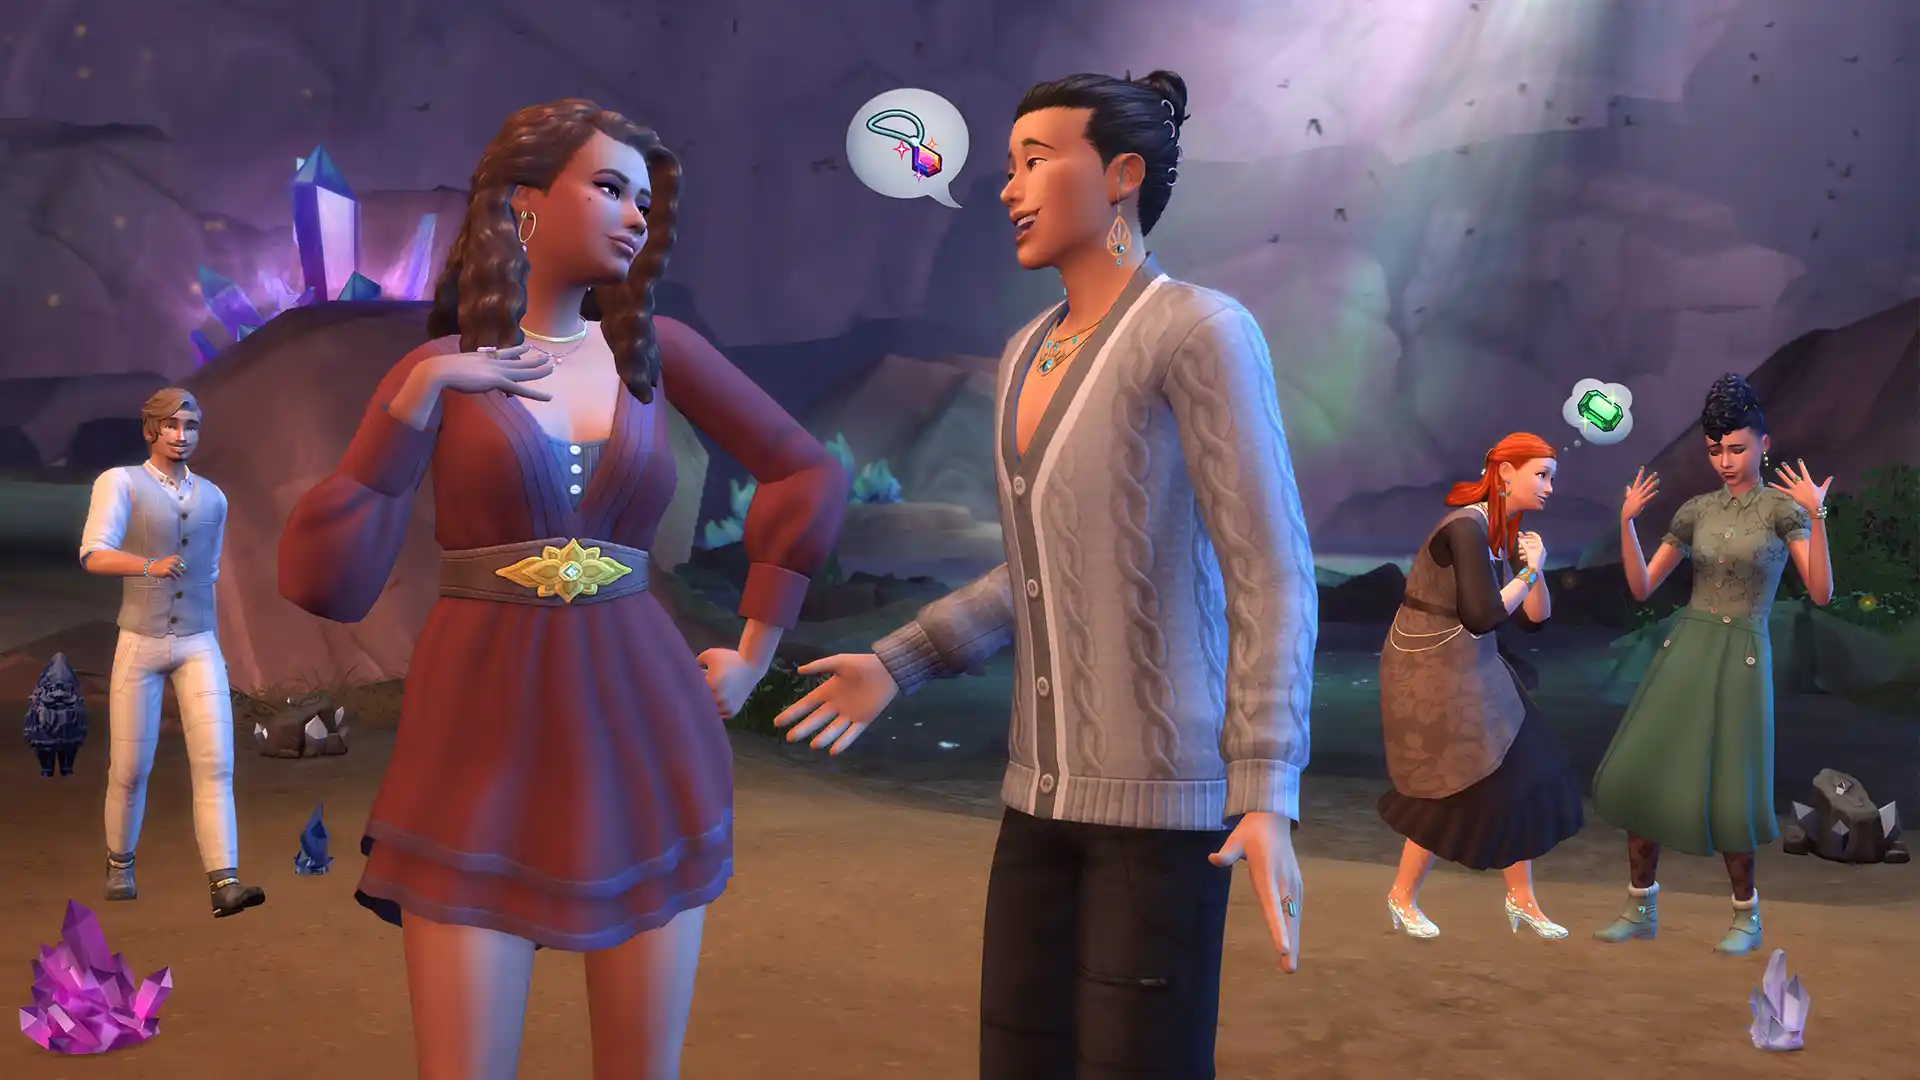 The Sims 4 Creazioni di Cristallo Stuff Pack: trailer e dettagli del pacchetto in uscita il 29 febbraio 